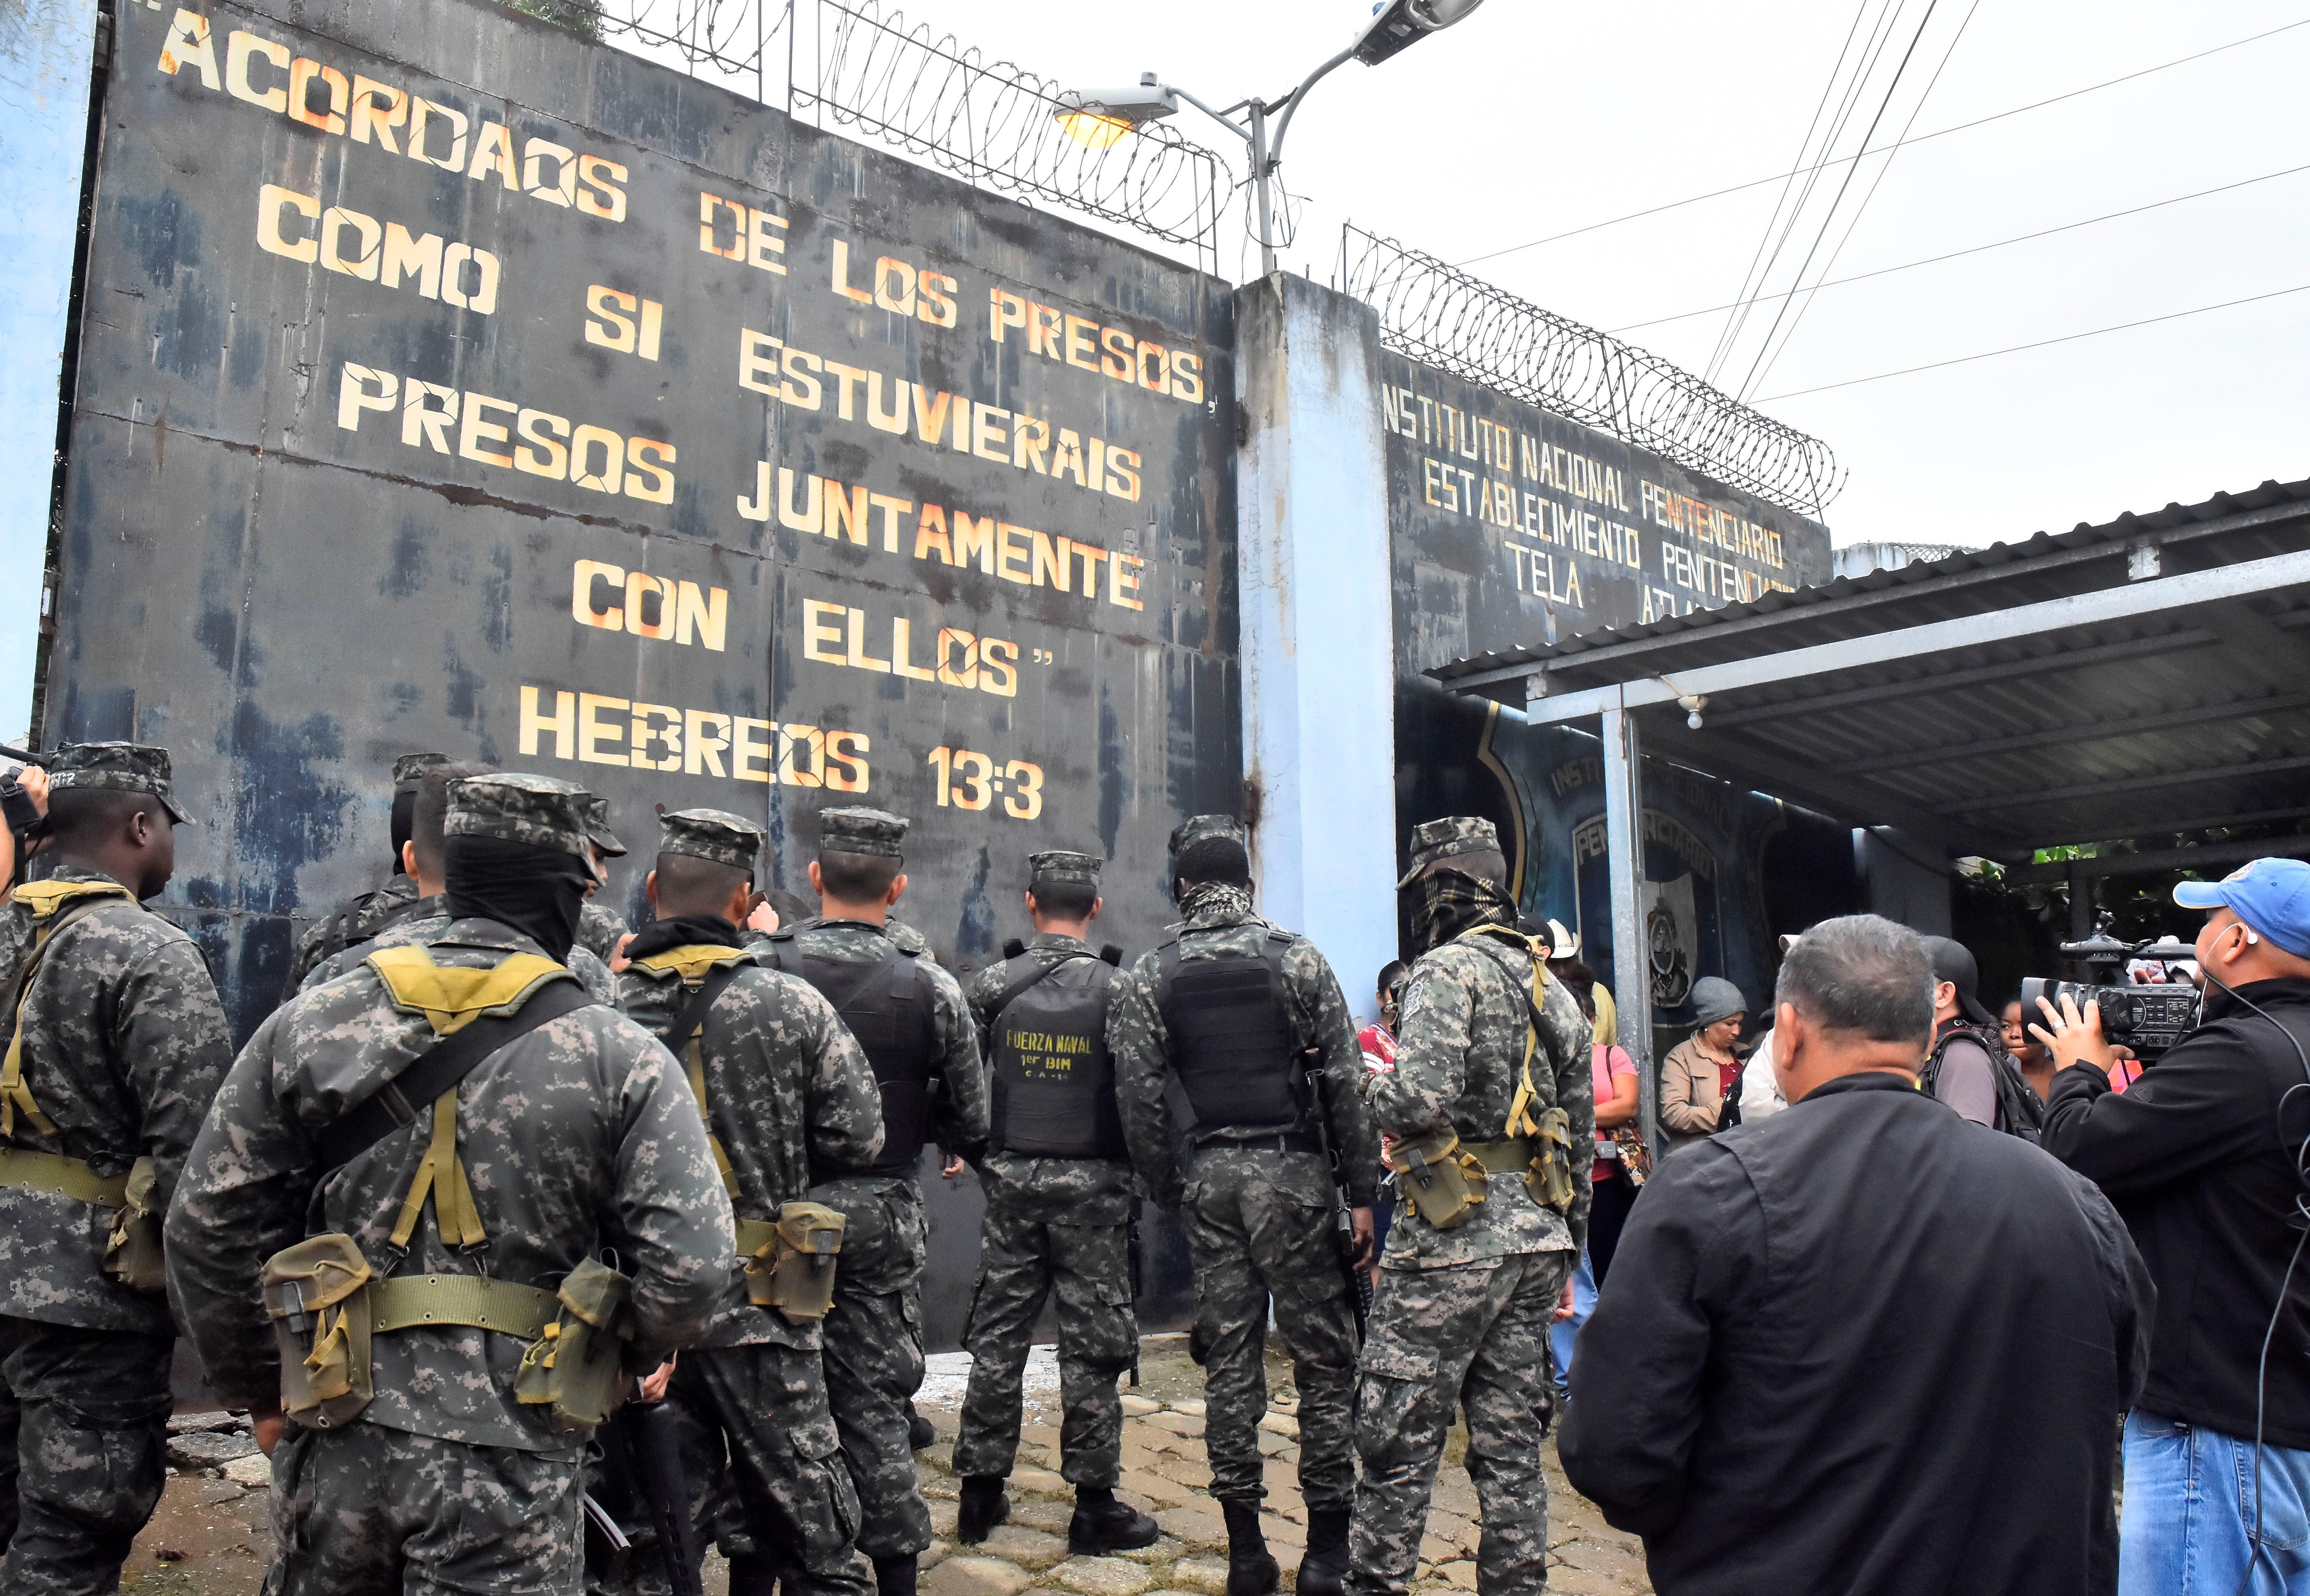 La riña ocurre horas después de una balacera que dejó varios muertos. (Foto Prensa Libre: EFE)